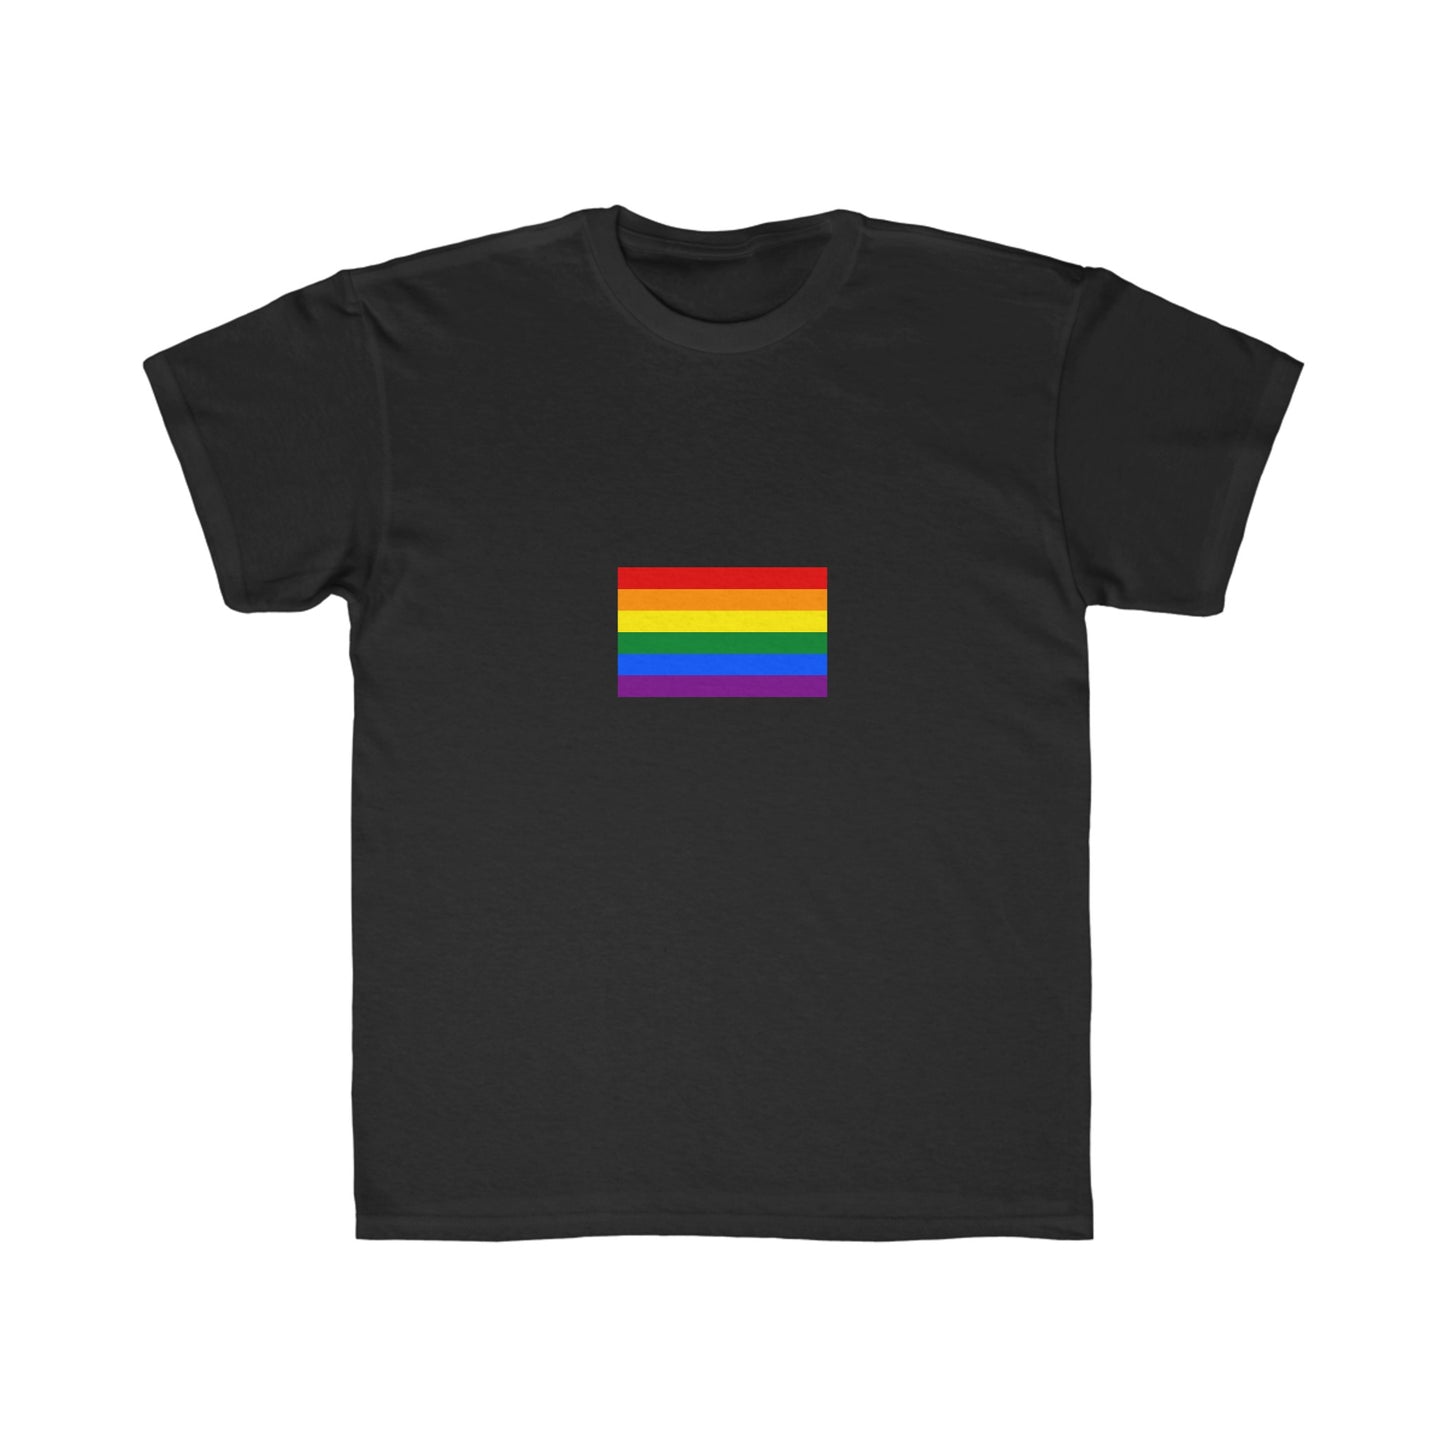 Rainbow Pride Graphic Kids T-Shirt